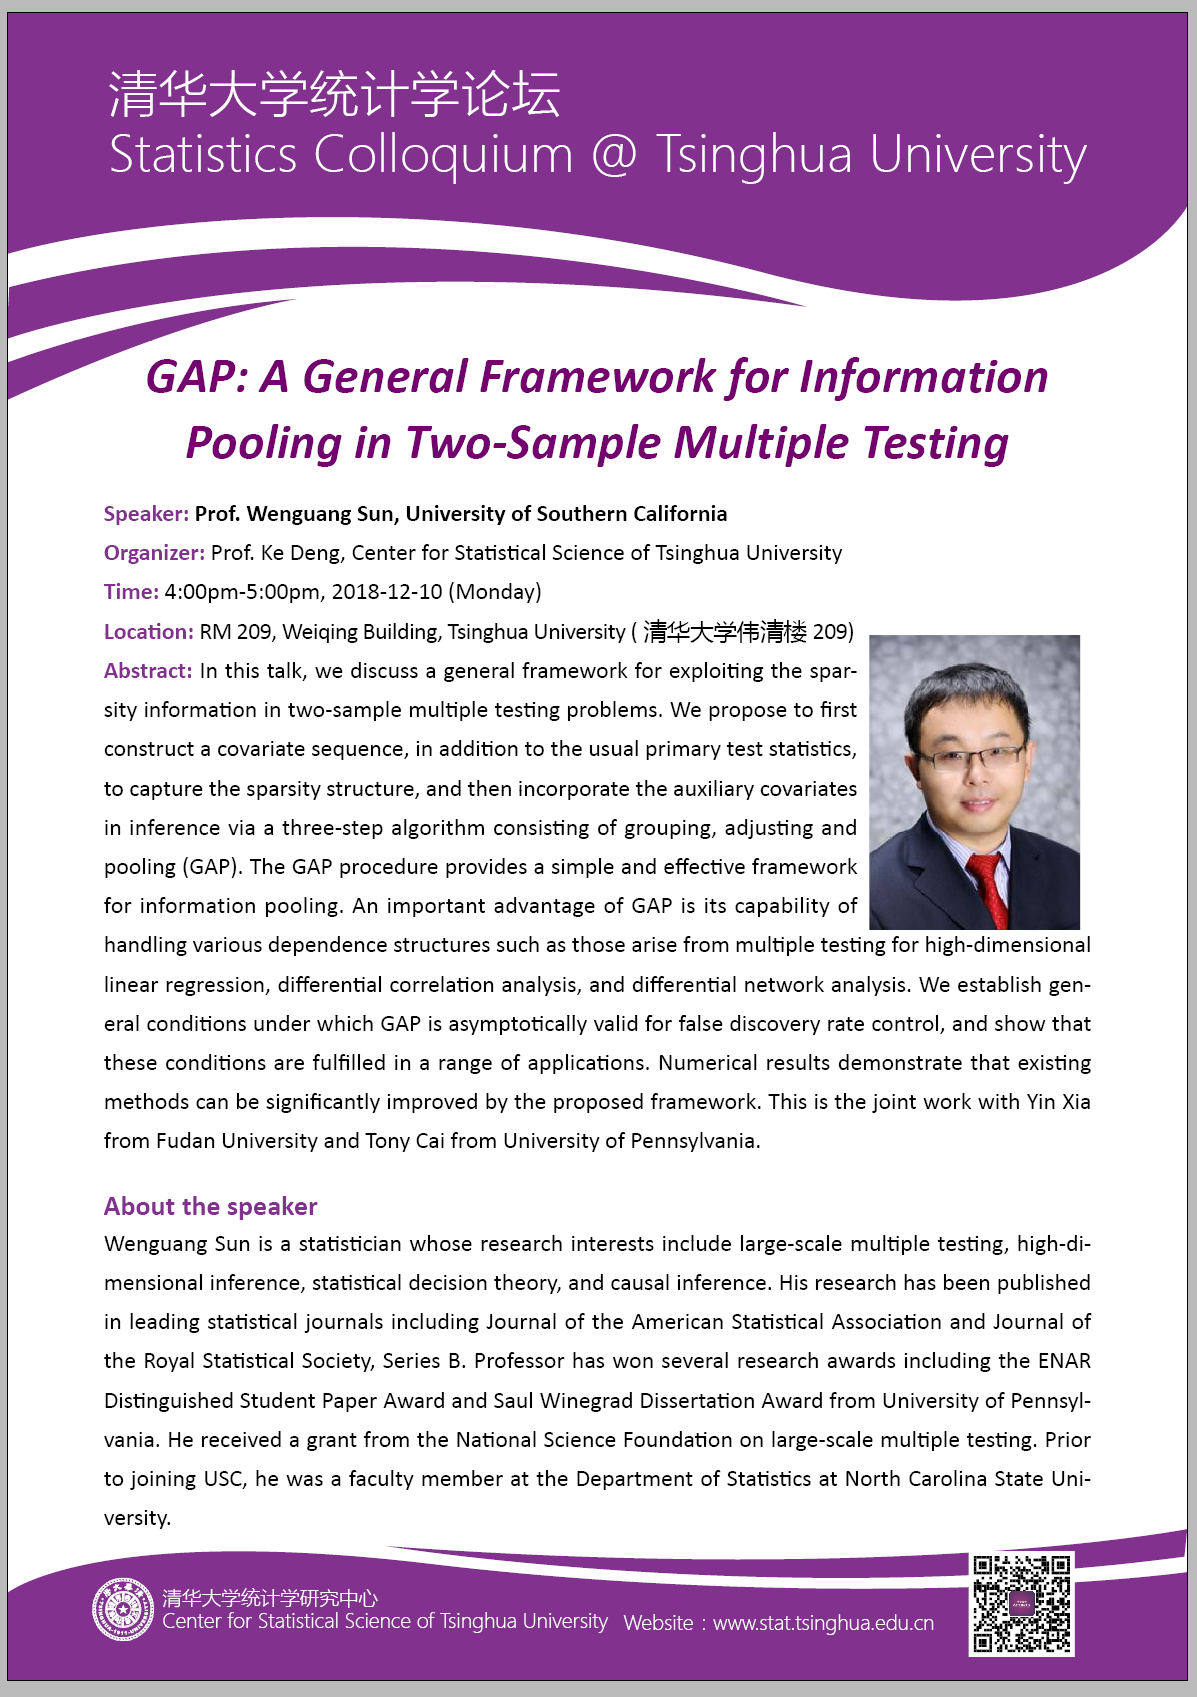 【统计学论坛】GAP: A General Framework for Information Pooling in Two-Sample Multiple Testing